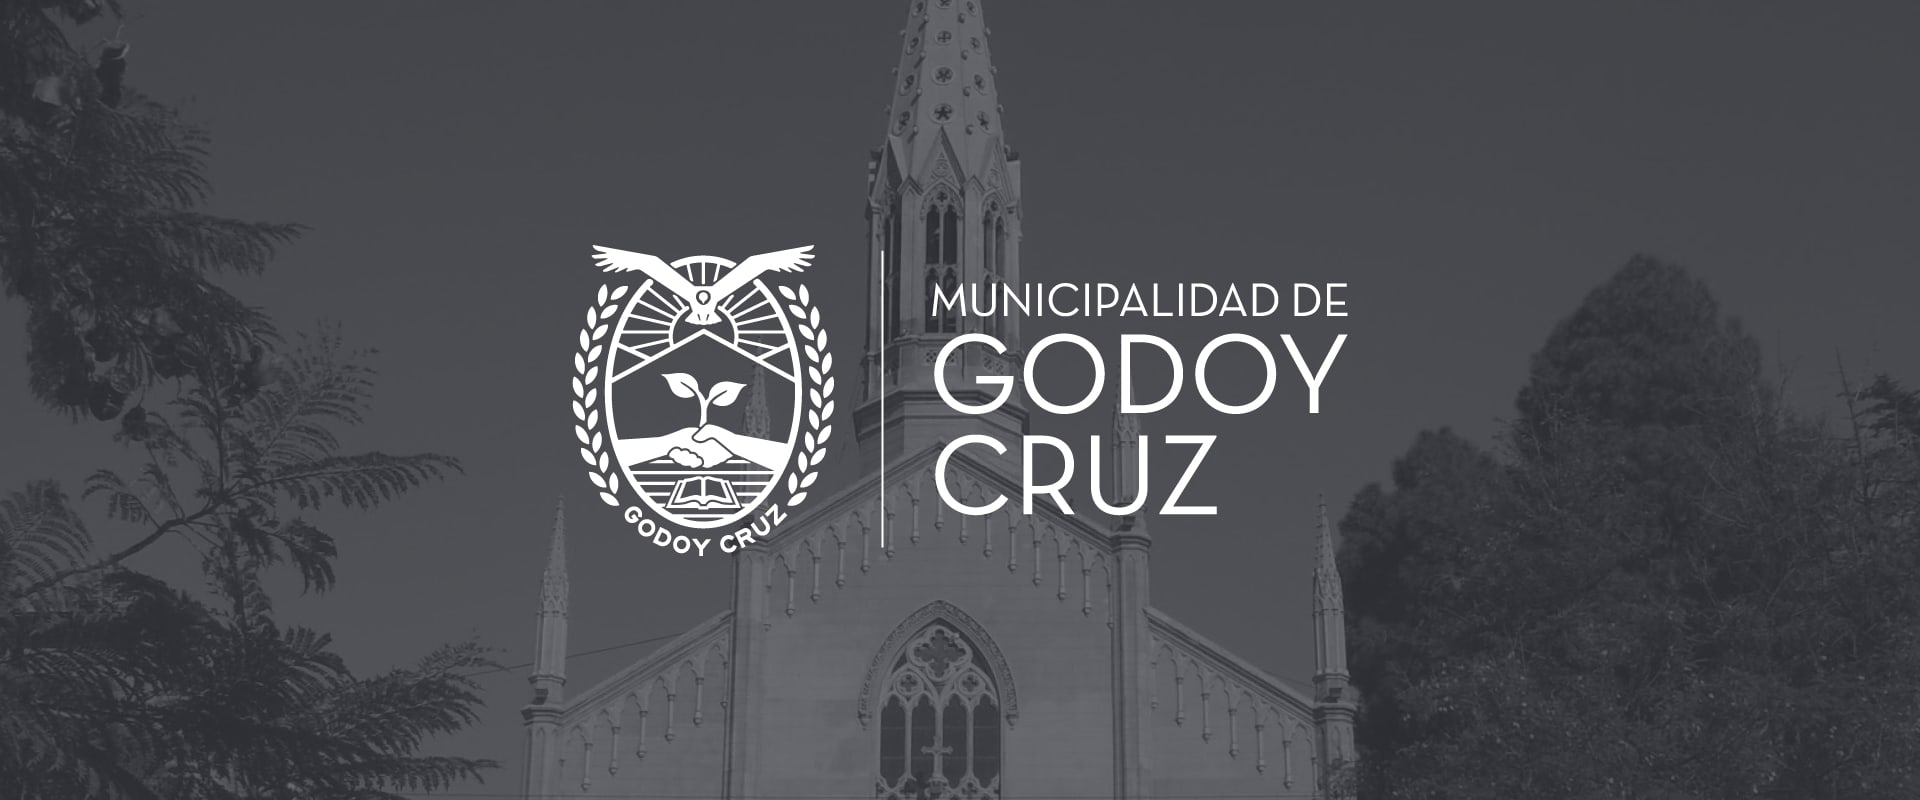 logo municipalidad de godoy cruz